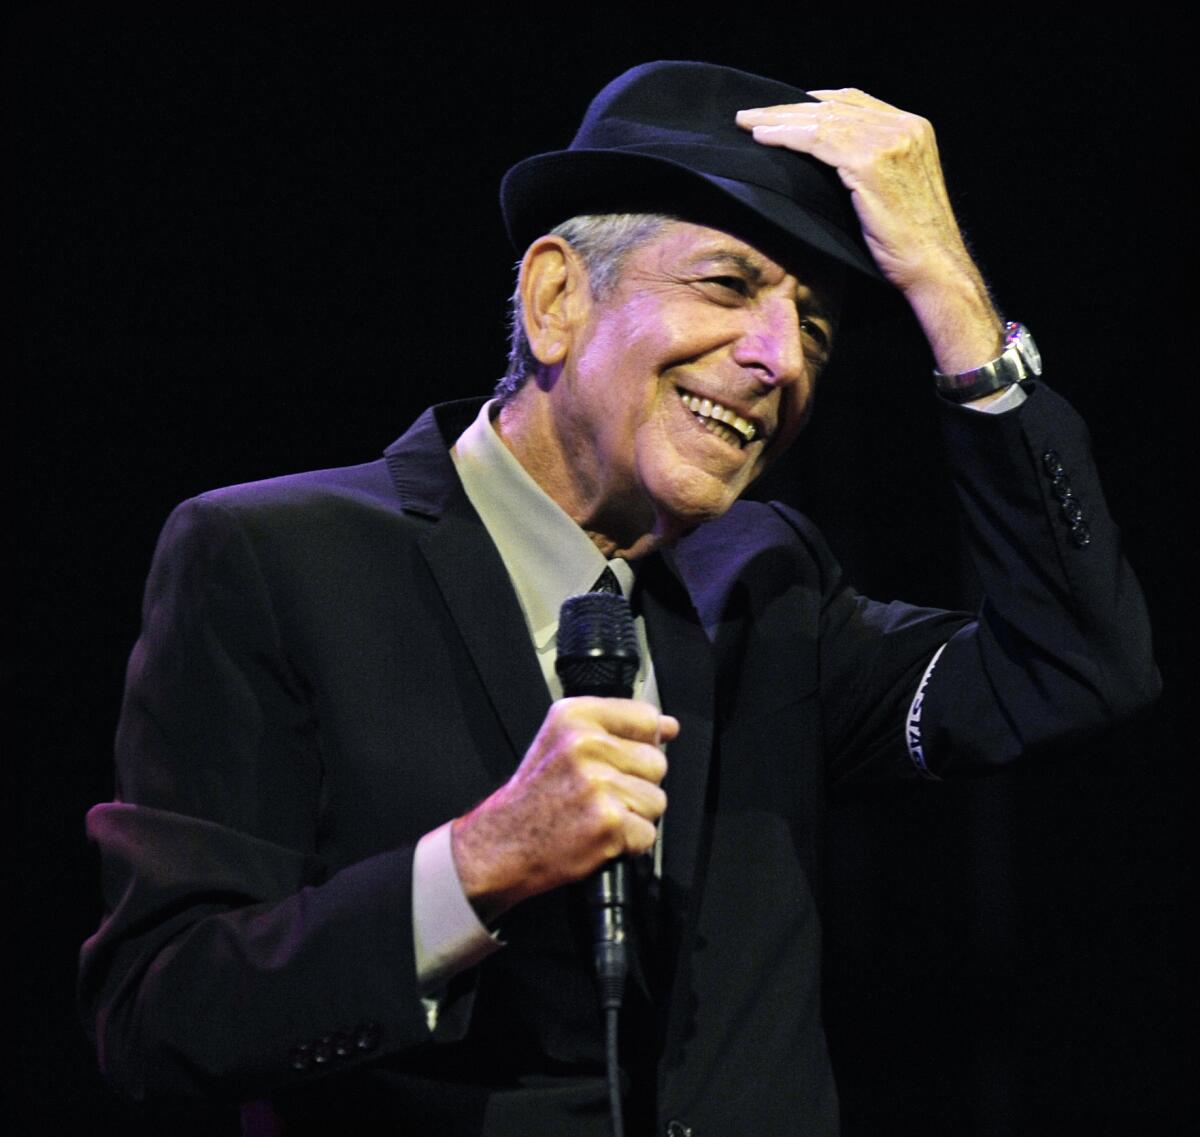 En esta foto del 17 de abril del 2009, Leonard Cohen canta en el Festival de Música y Arte de Coachella en Indio, California. El cantautor canadiense, que combinó espiritualidad y sexualidad en canciones como "Hallelujah", "Suzanne" y "Bird on a Wire", murió el 7 de noviembre del 2016 a los 82 años.